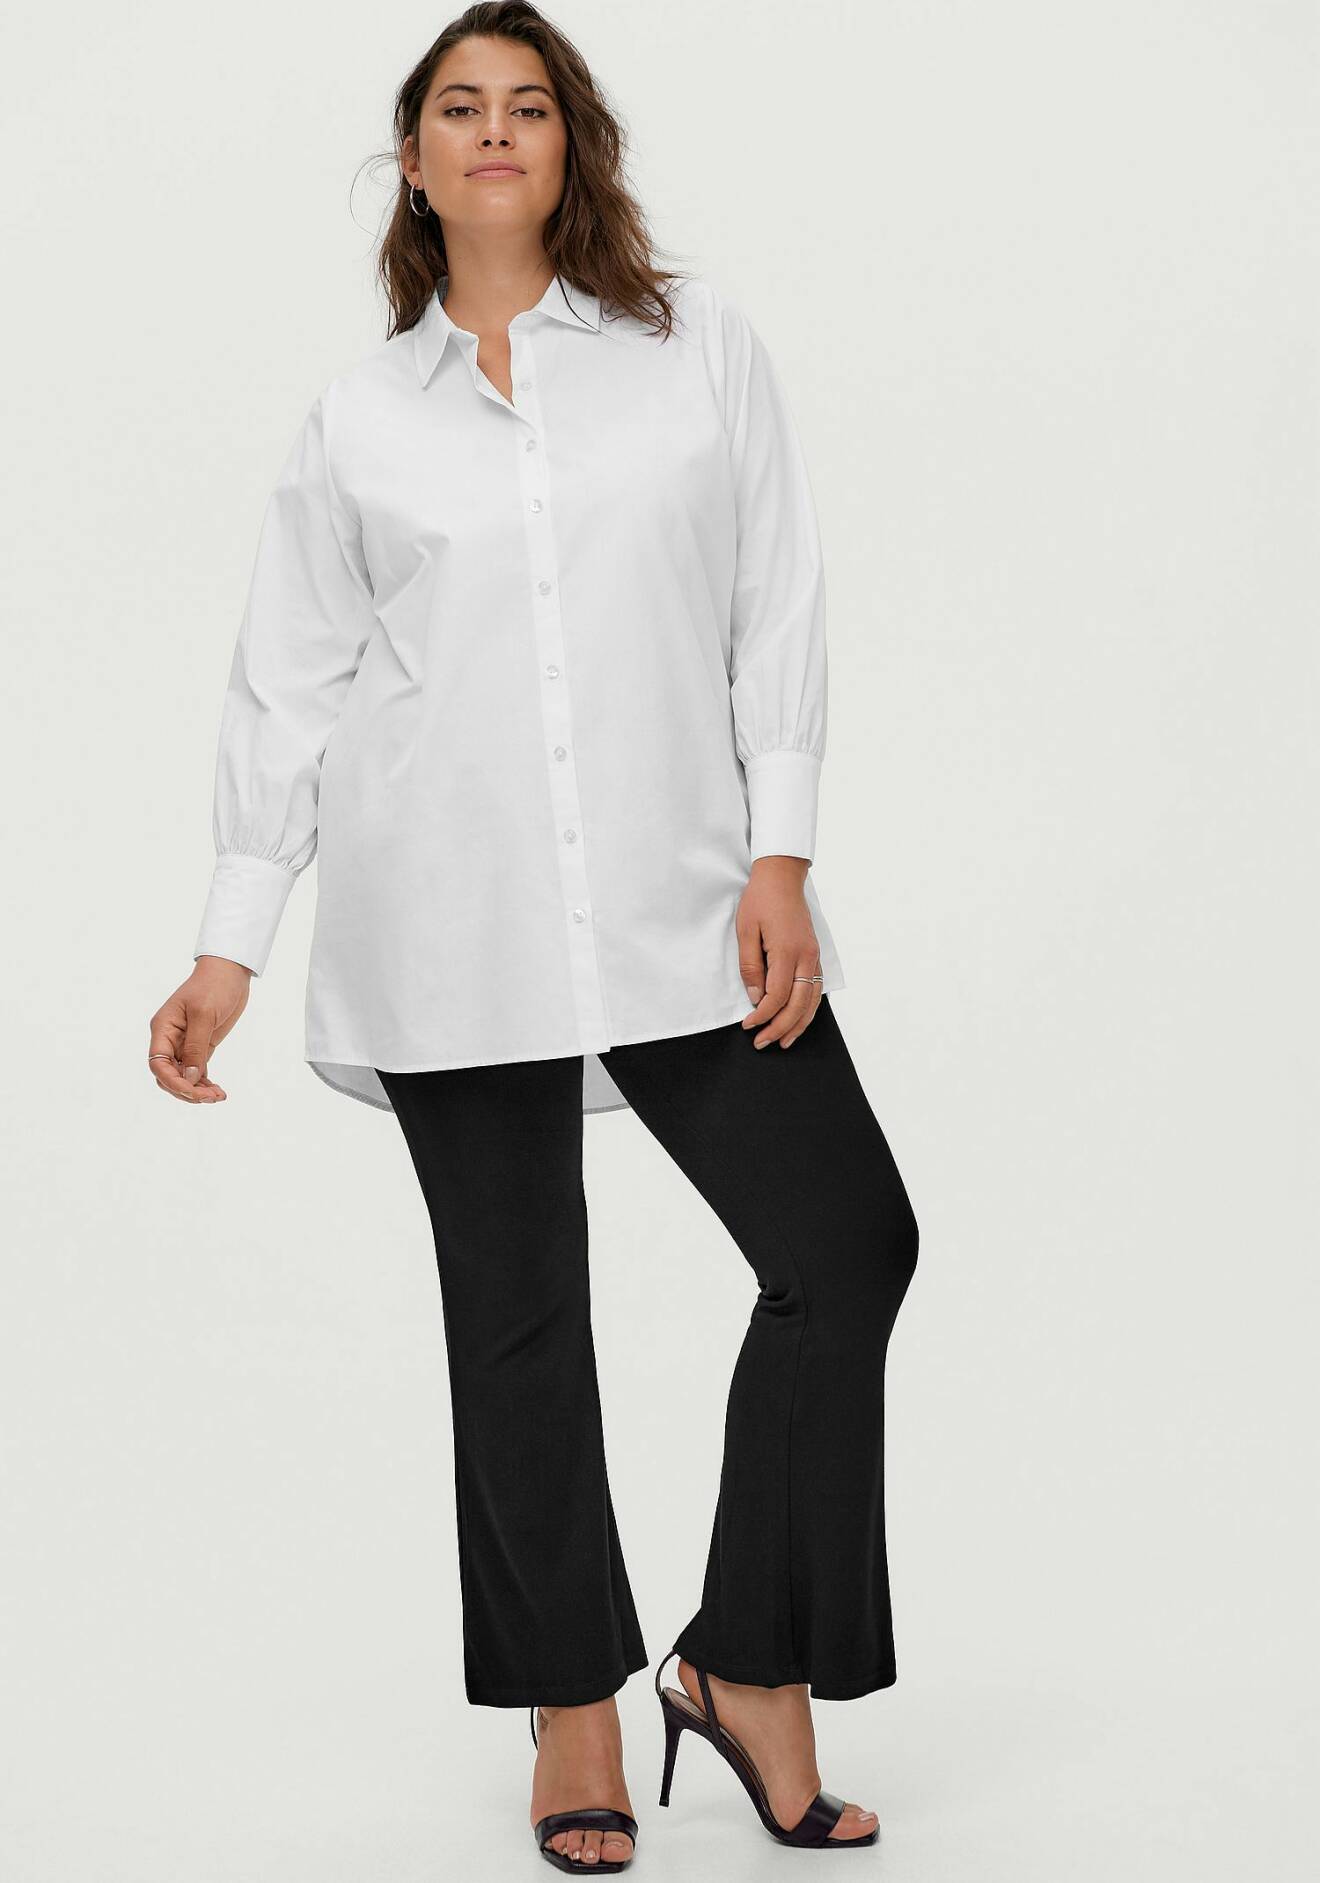 Kvinna med vit skjorta och svarta byxor.